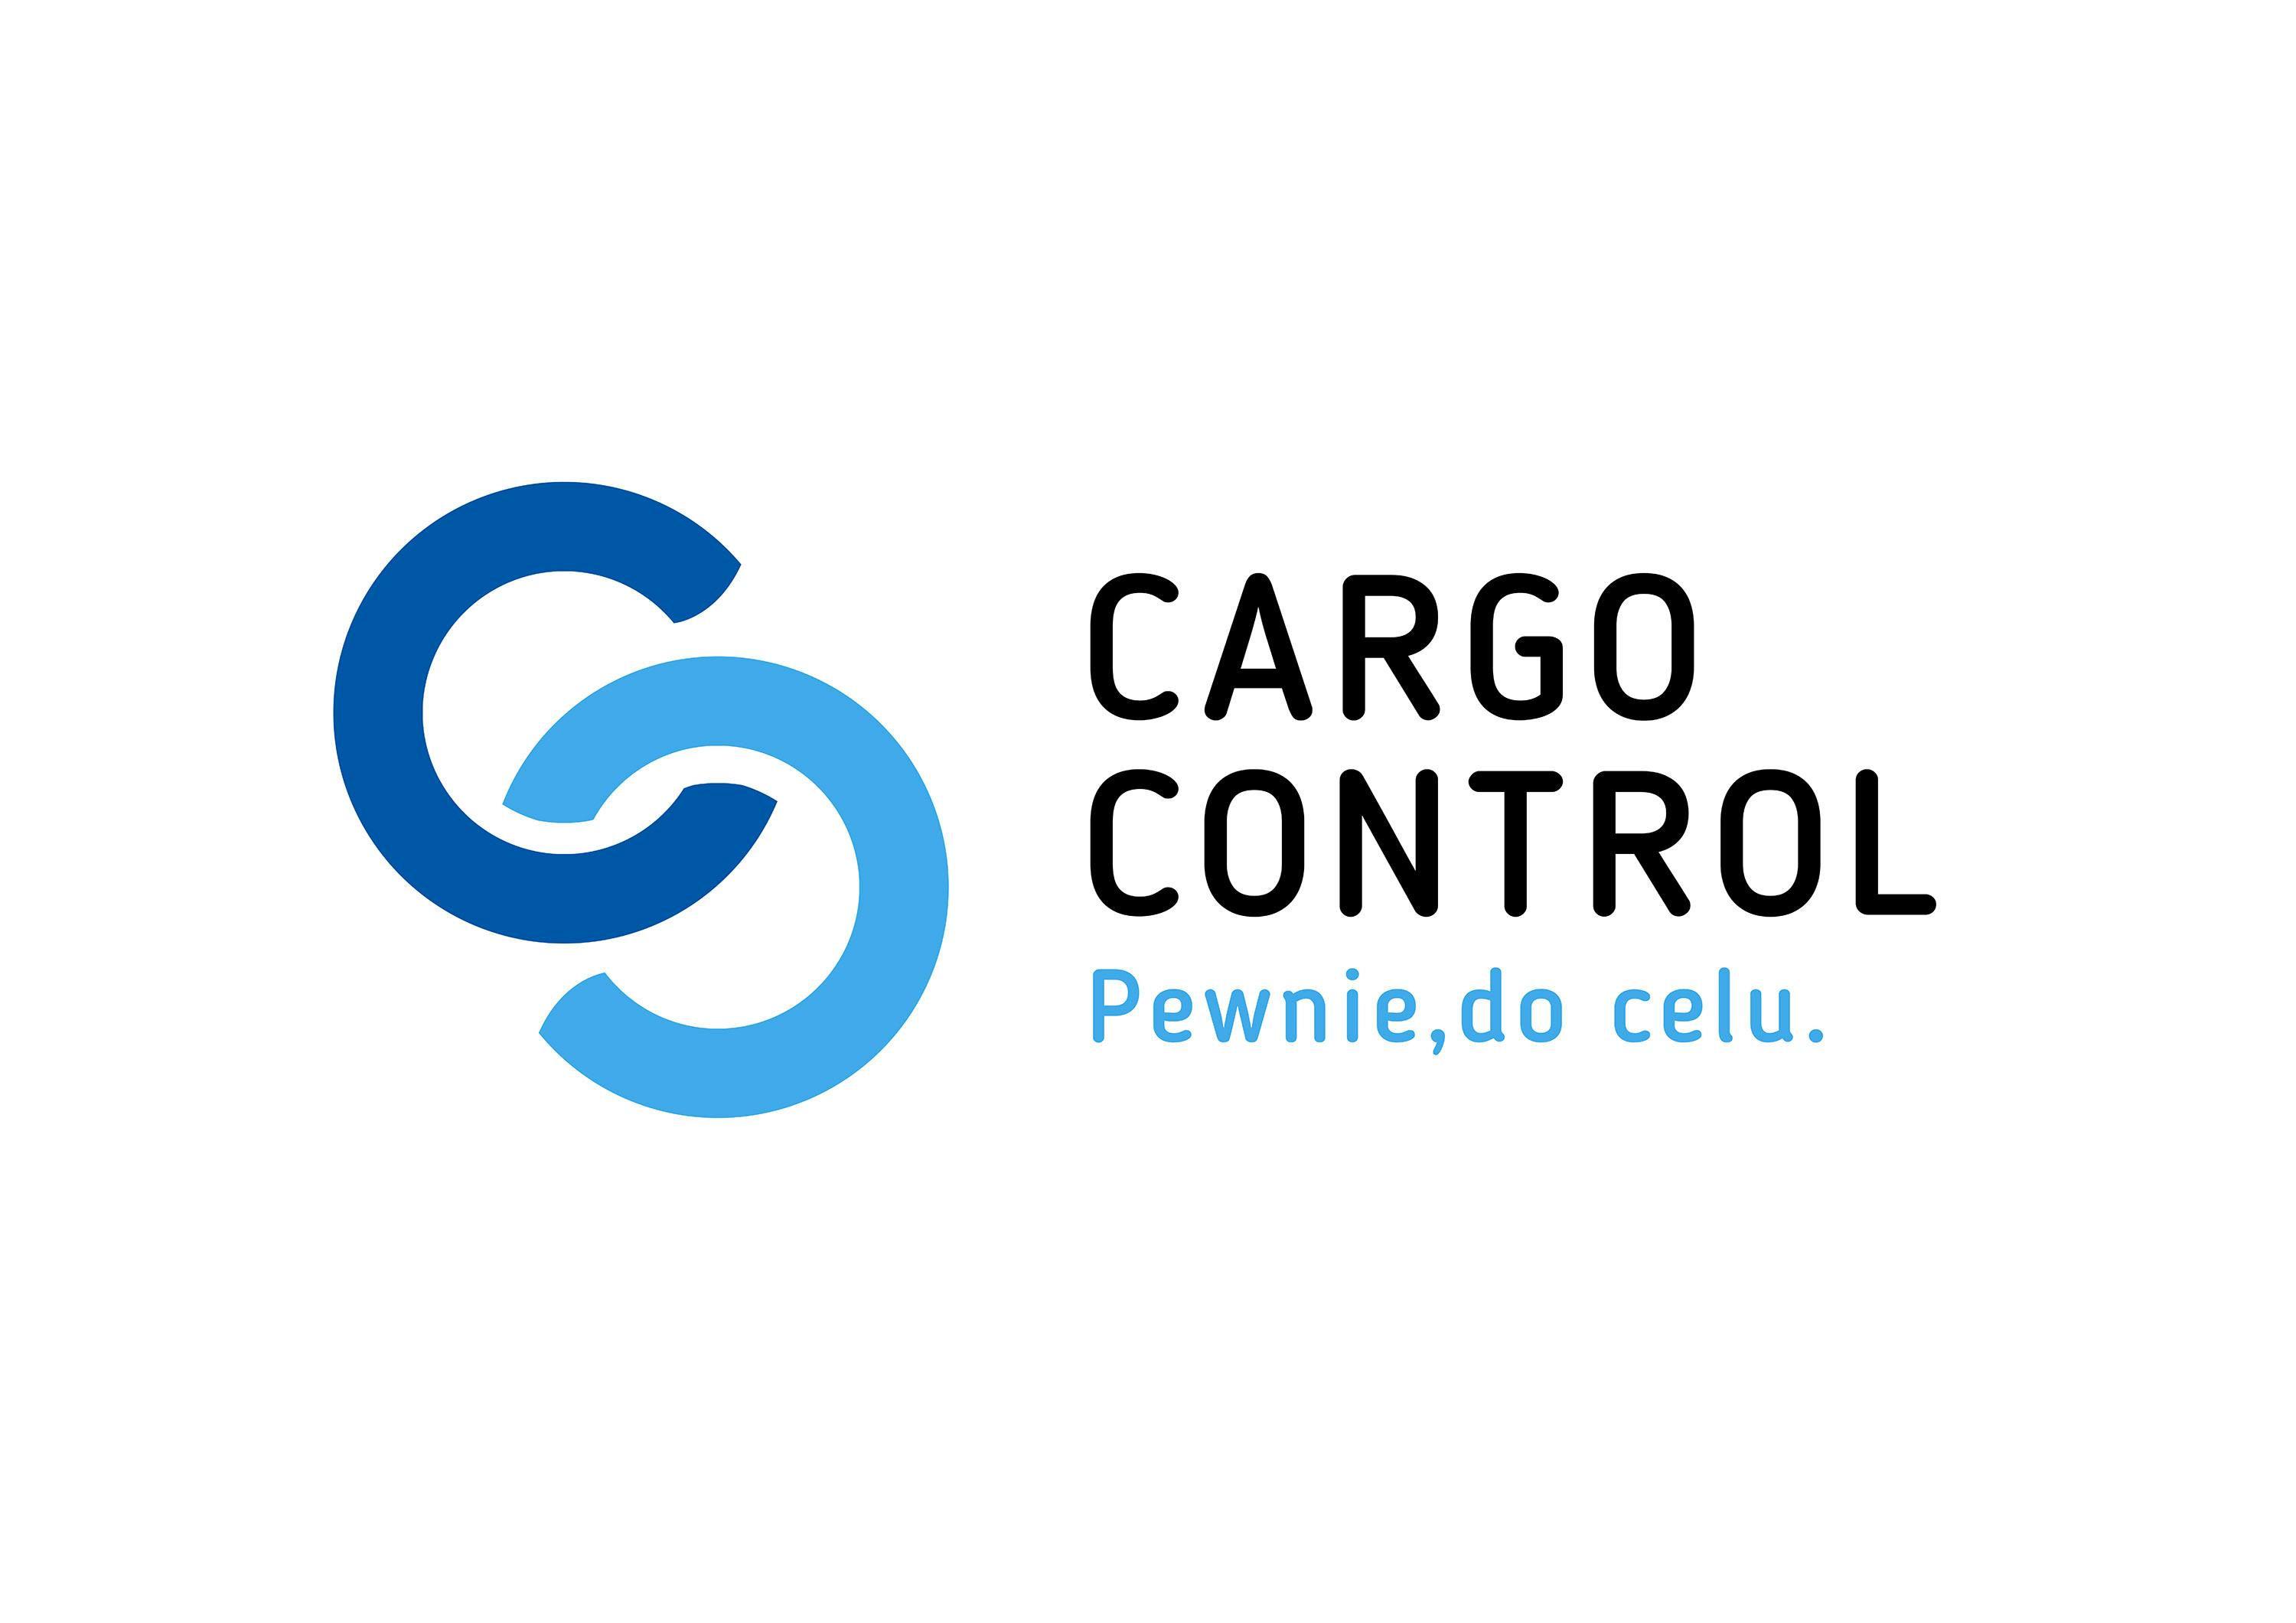 Cargo control logo